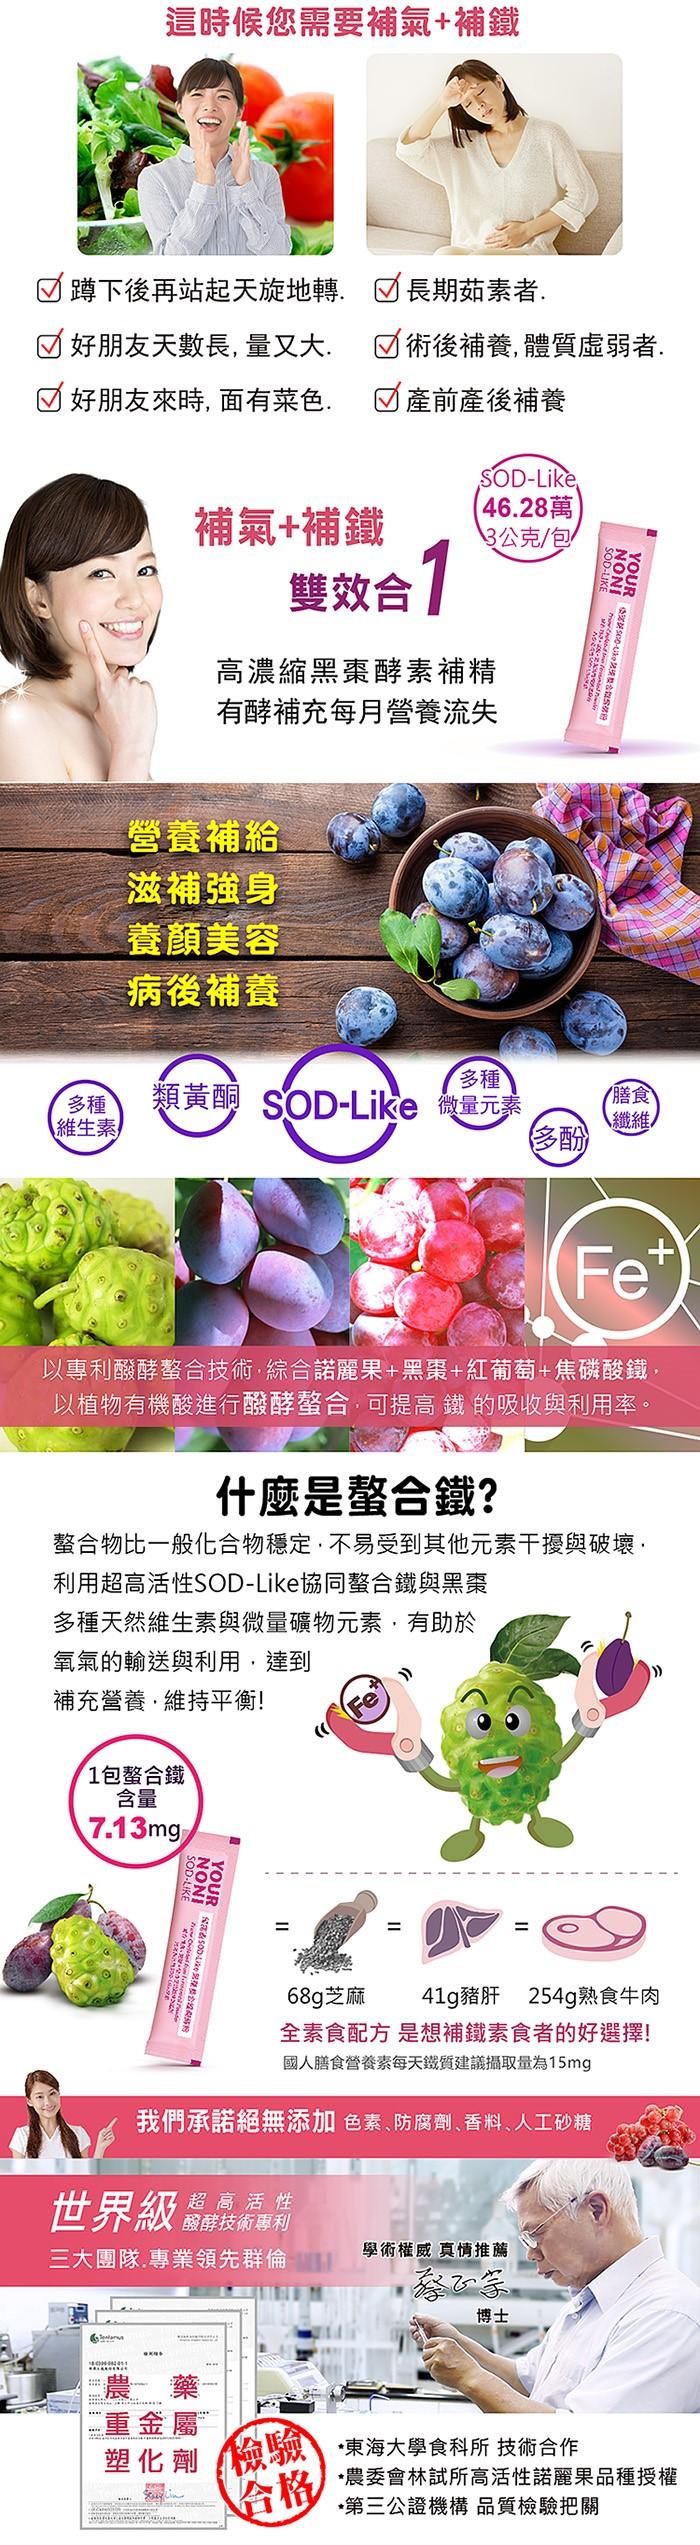 優諾麗SOD-Like黑棗螯合鐵醱酵粉(30包)﻿產品資訊